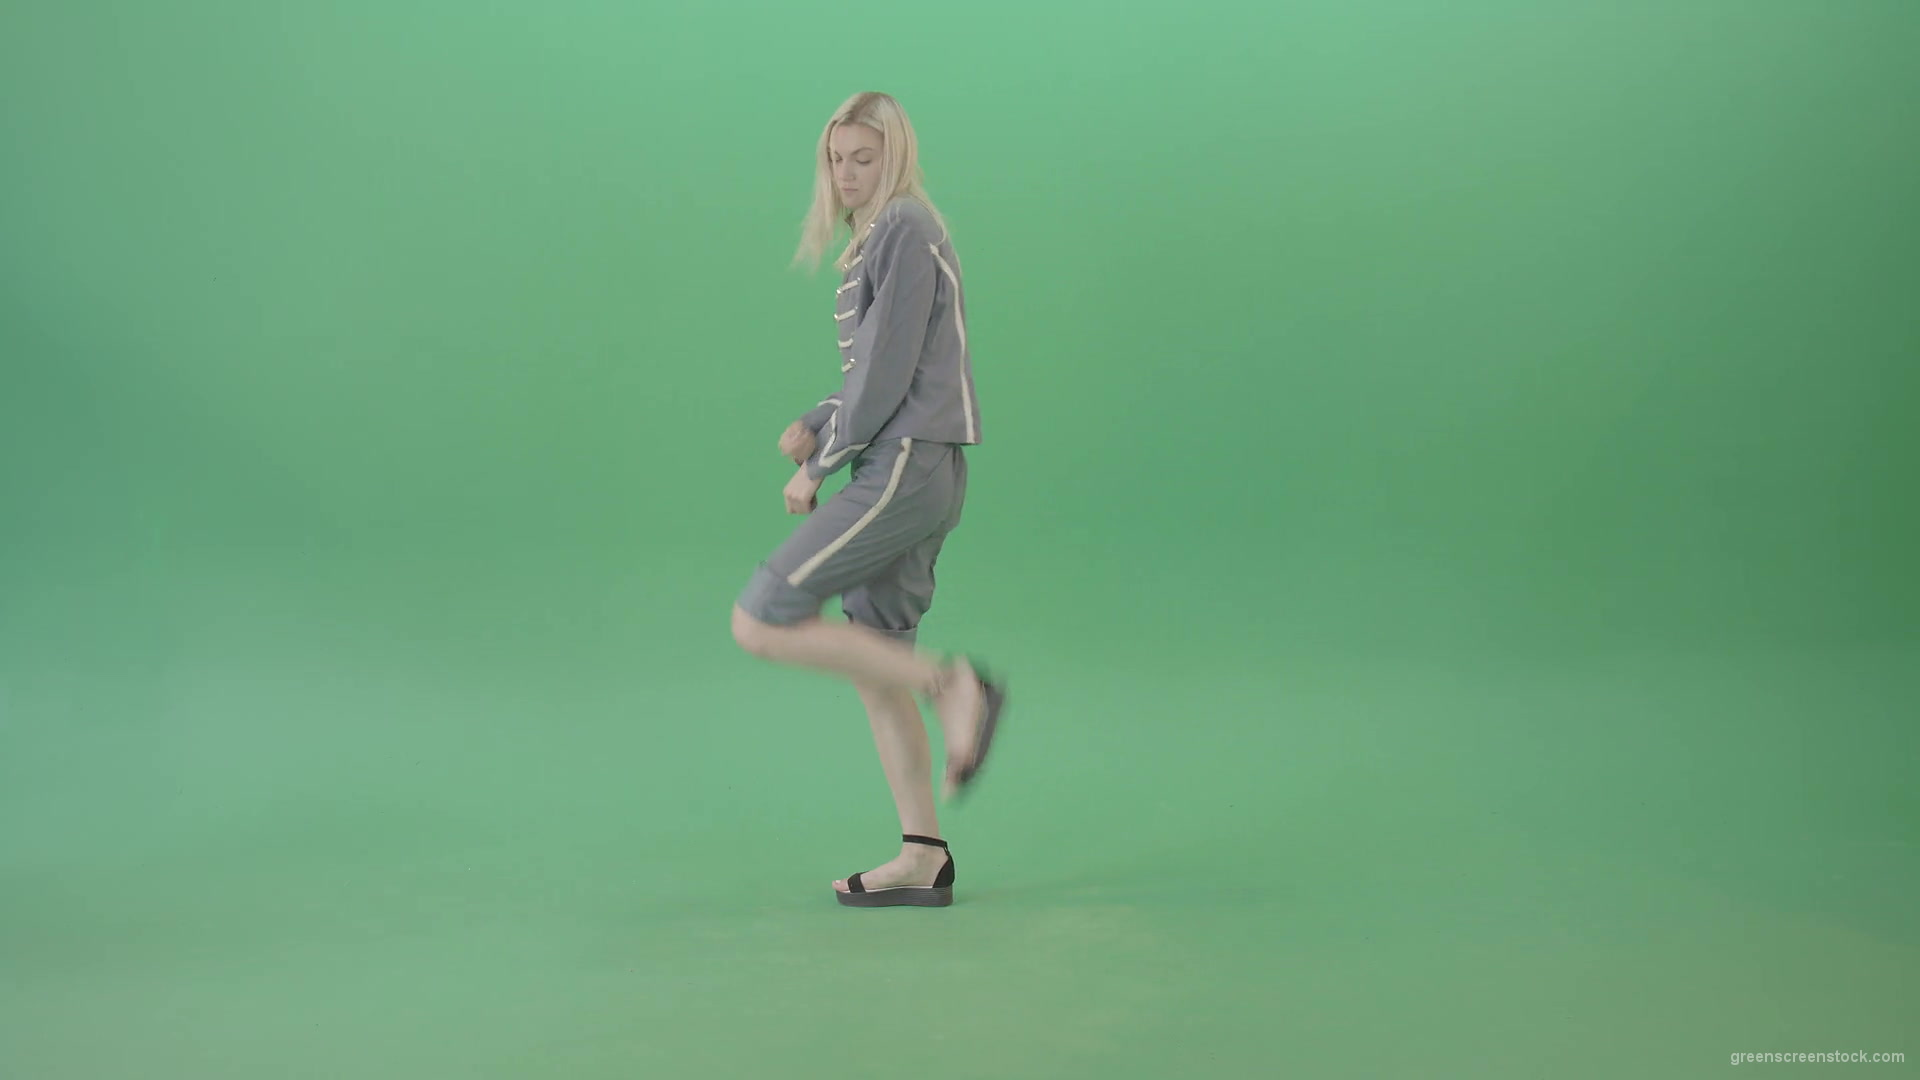 Techno-rave-blonde-girl-dancing-house-chill-isolated-on-green-screen-4K-Video-Footage-1920_005 Green Screen Stock